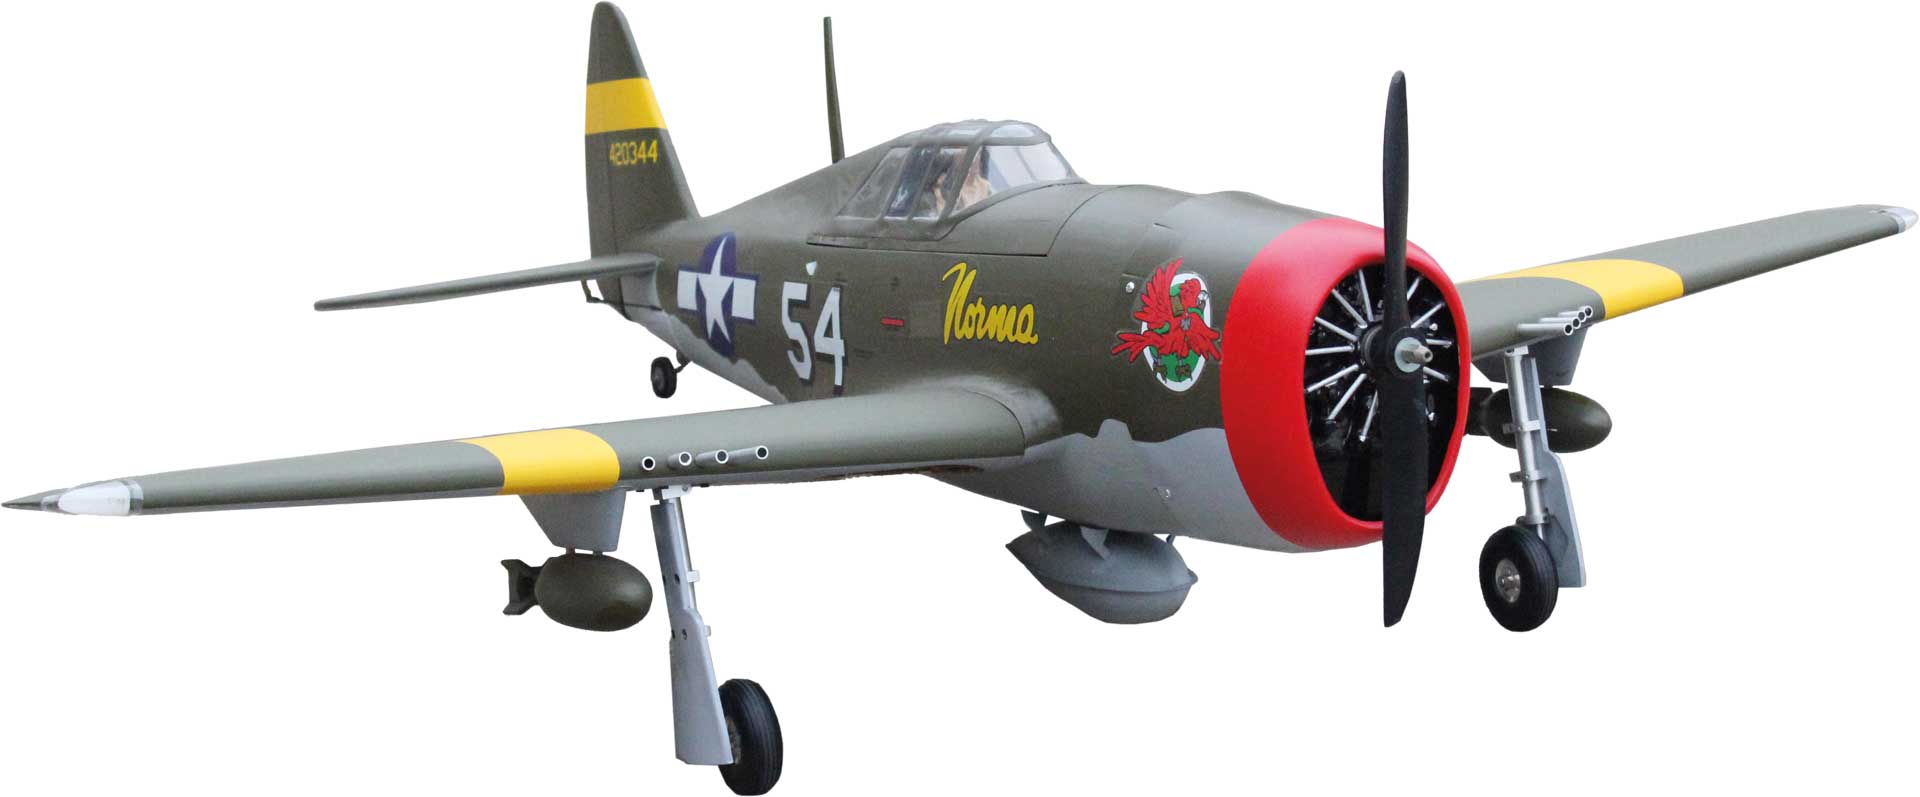 Seagull Models ( SG-Models ) P-47D Little Bunny MK-II 10ccm 55" OHNE Einziehfahrwerk ARF Warbird, matt